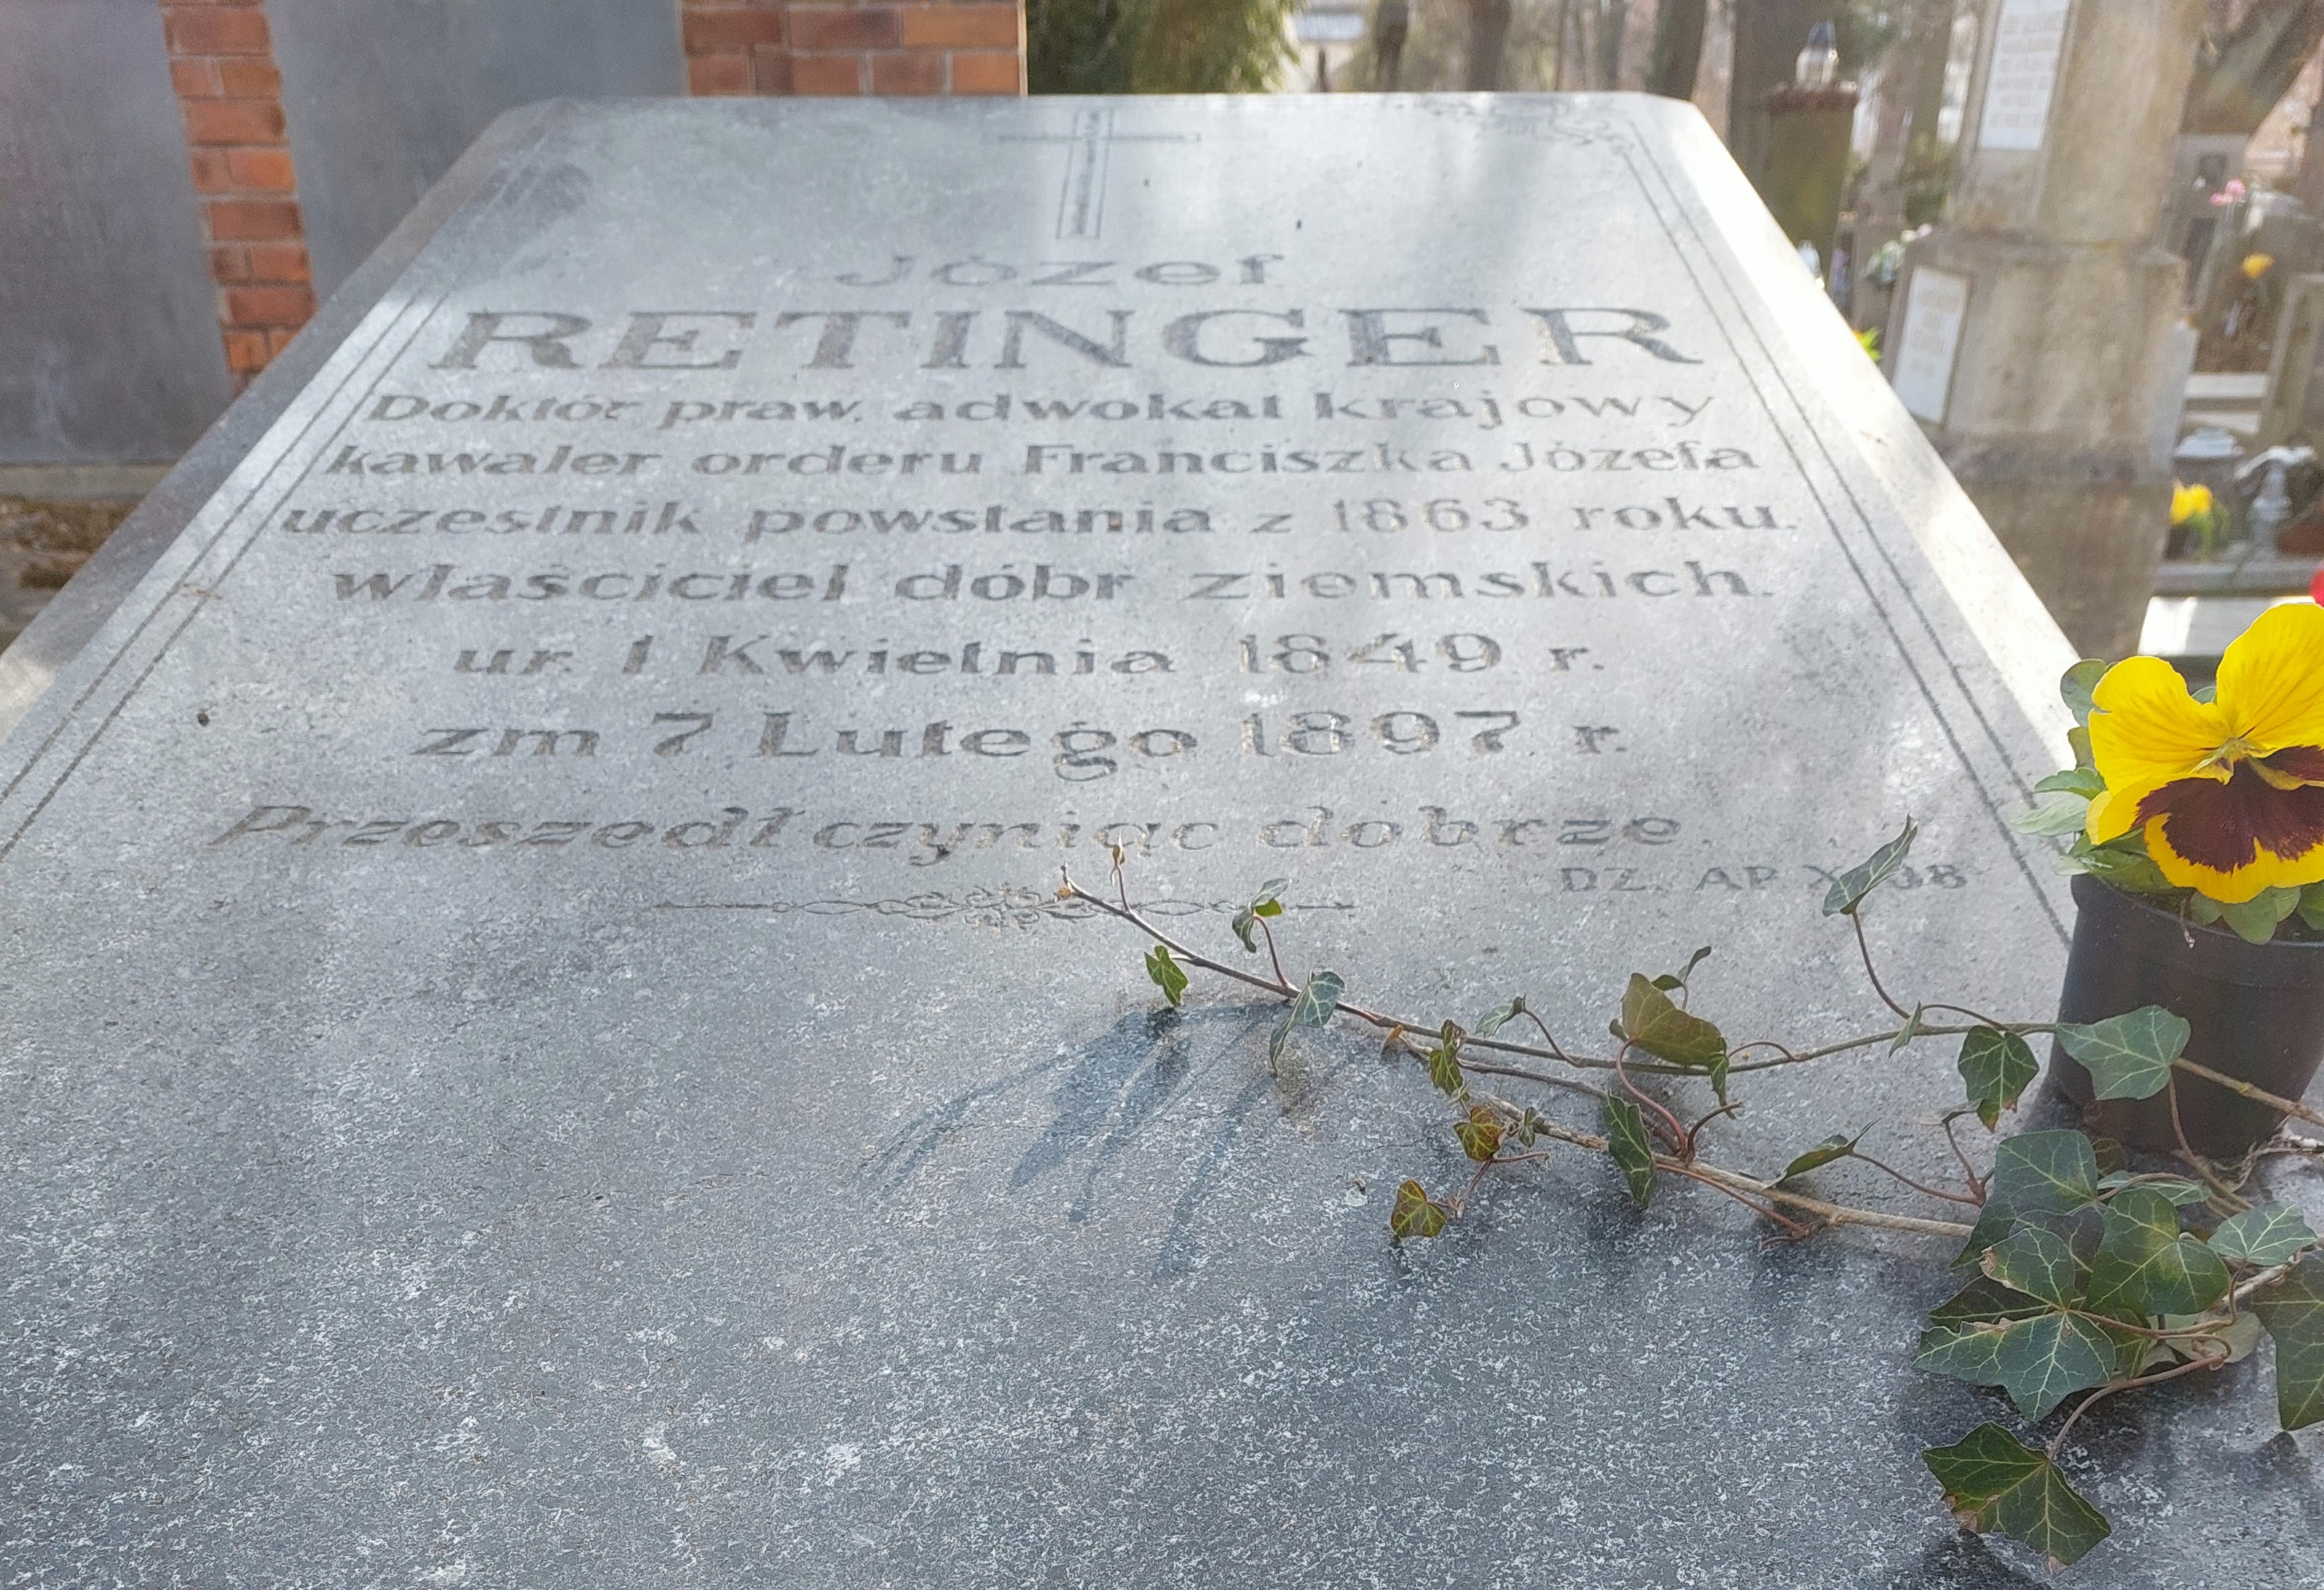 Grób J.Retingera na Cmentarzu Rakowickim